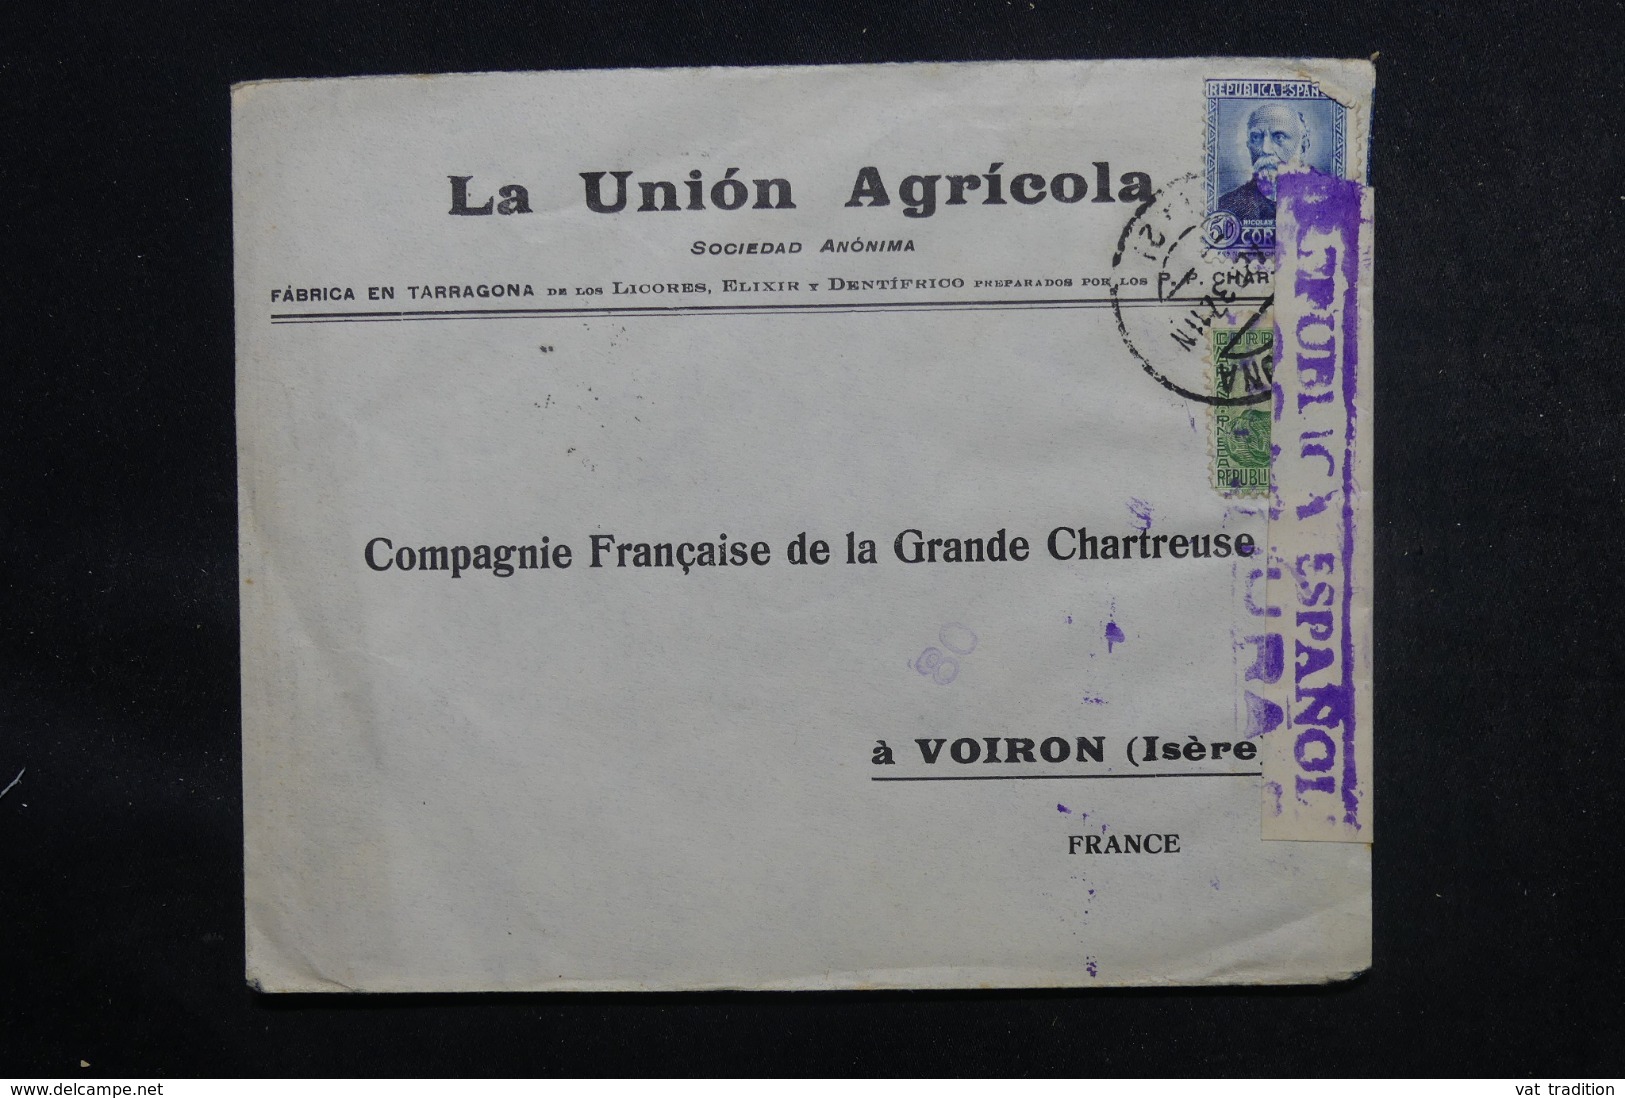 ESPAGNE - Cachet De Censure Sur Enveloppe Commerciale Pour La France En 1937 - L 46876 - Republikanische Zensur